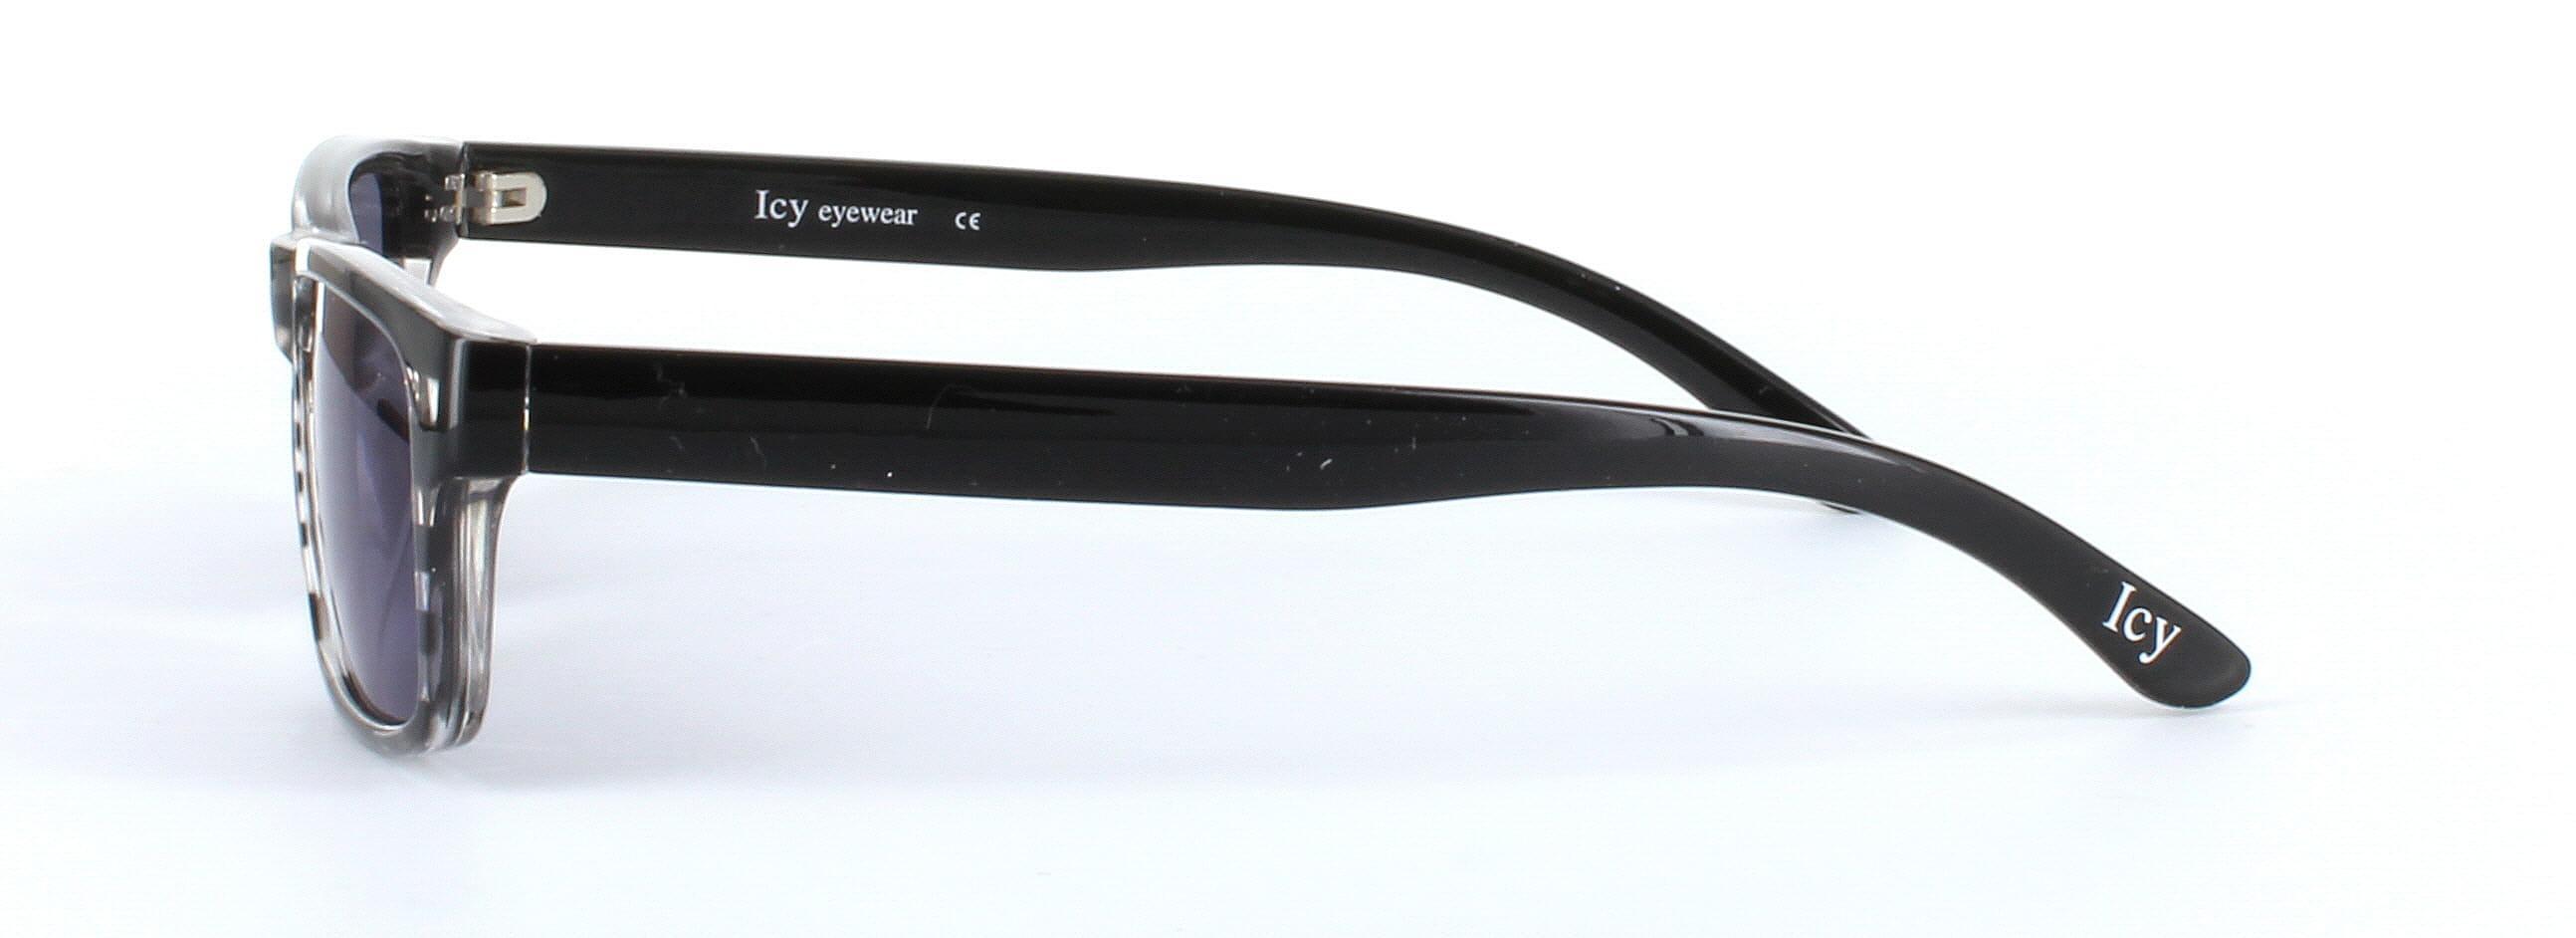 ICY 160 Grey Full Rim Rectangular Plastic Prescription Sunglasses - Image View 2